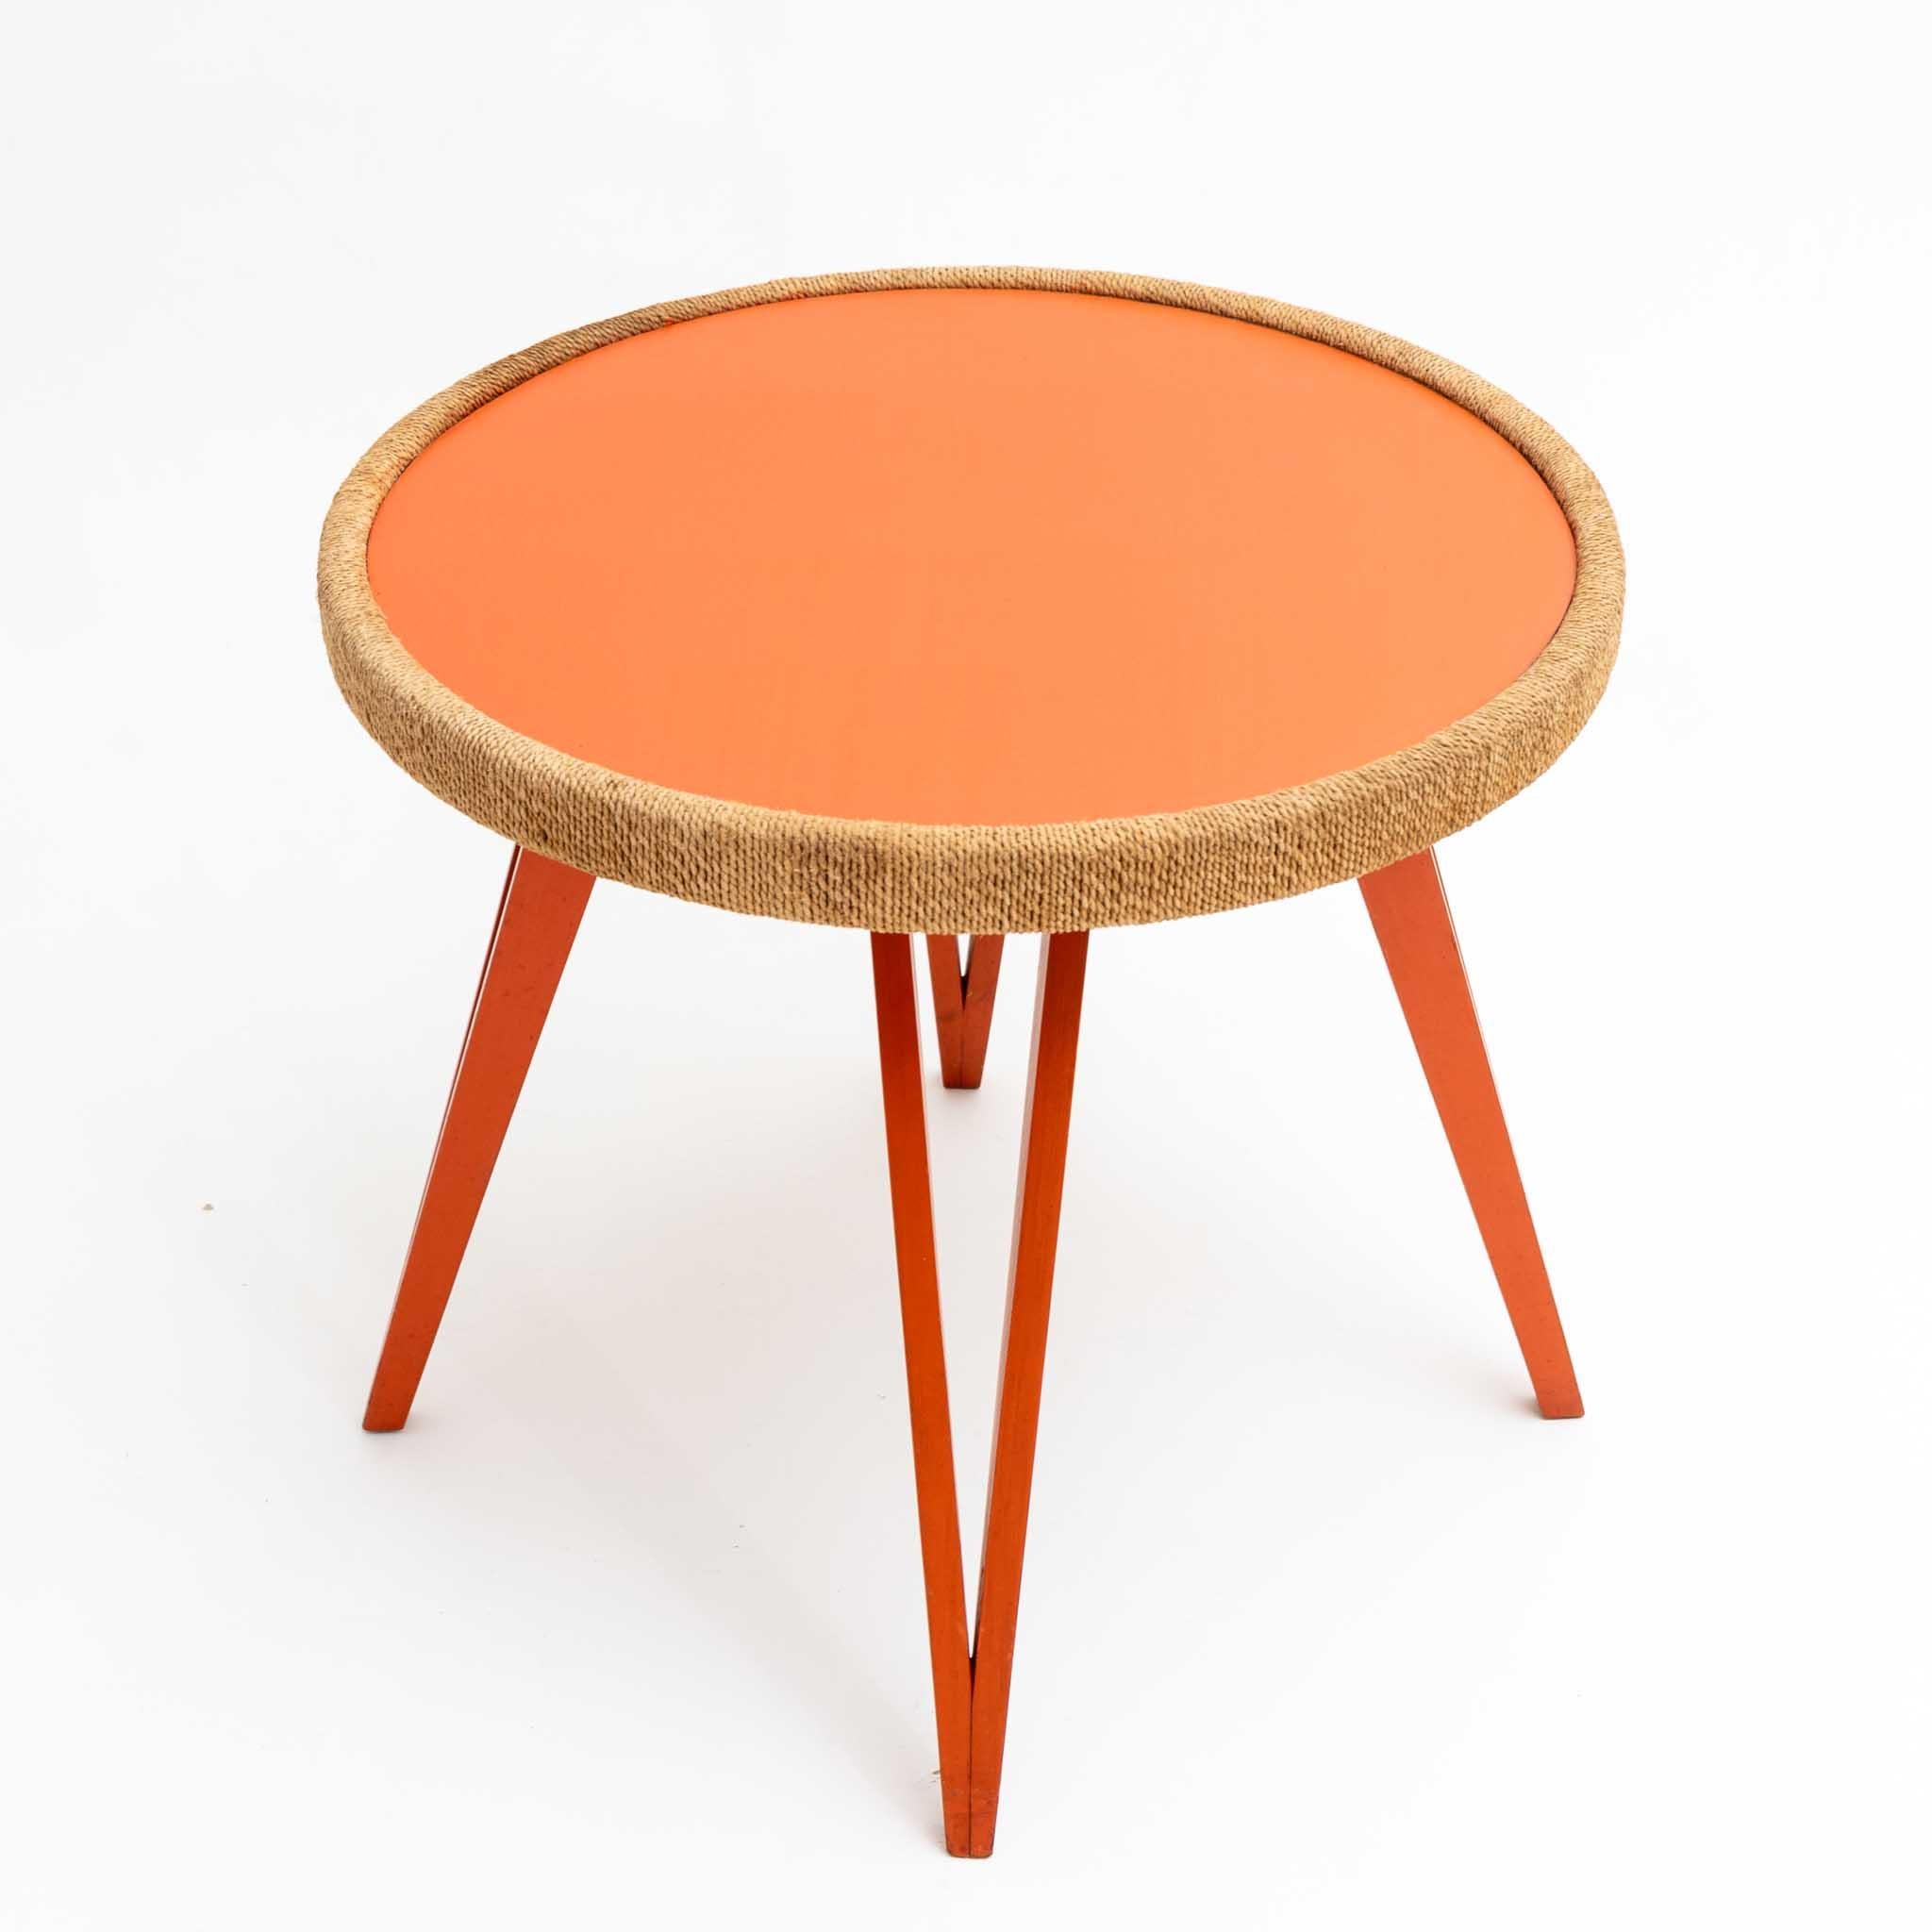 Couchtisch auf Haarnadelbeinen aus orange-rot gefärbtem Holz und runder Tischplatte mit Kordelrand aus Naturfaser. Die Tischplatte ist ebenfalls in einem Orangeton gehalten. Der Tisch wird dem italienischen Designer Augusto Romano (1918-2001)